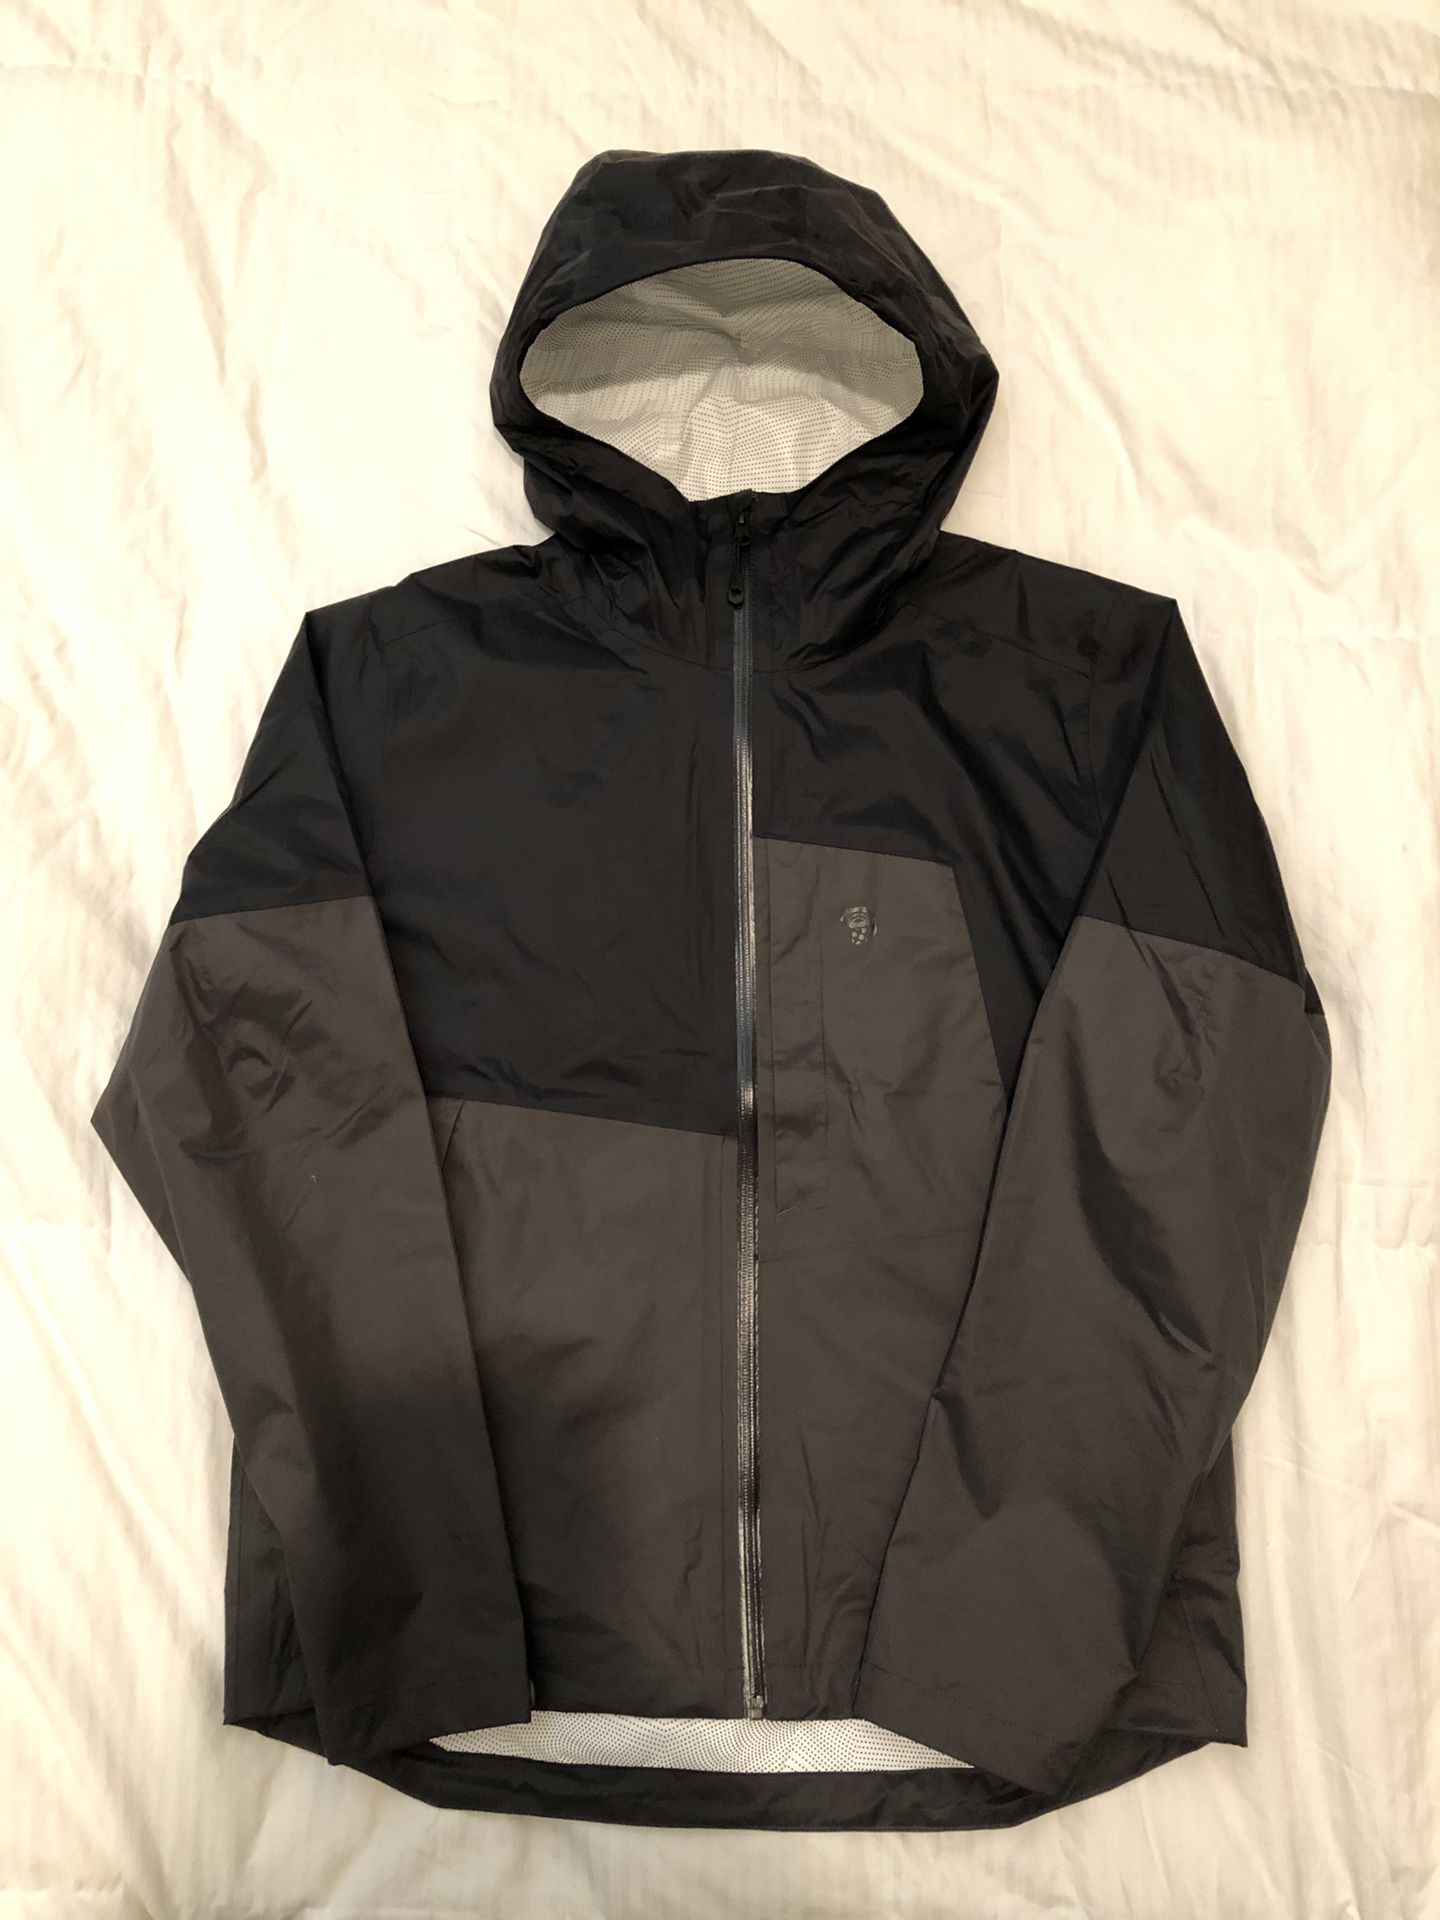 NEW Mountain Hardwear Exponent 2 Waterproof Rain Jacket Men’s Medium